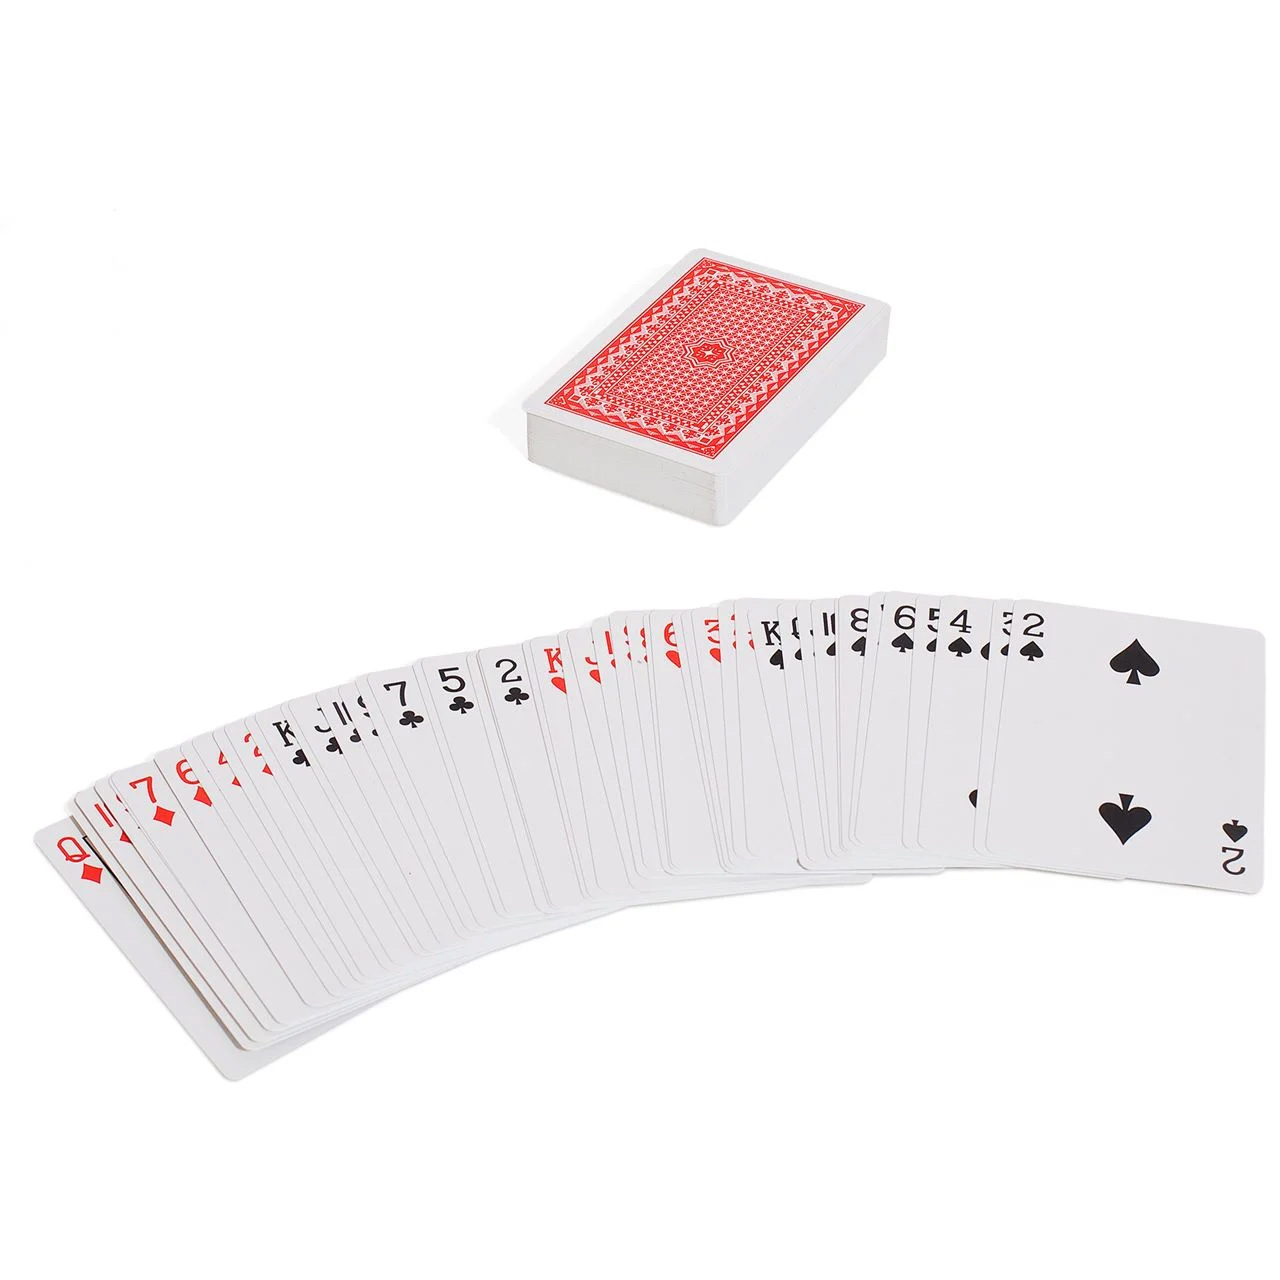 Τράπουλα Διπλή 100% Πλαστική Plastic Playing Cards